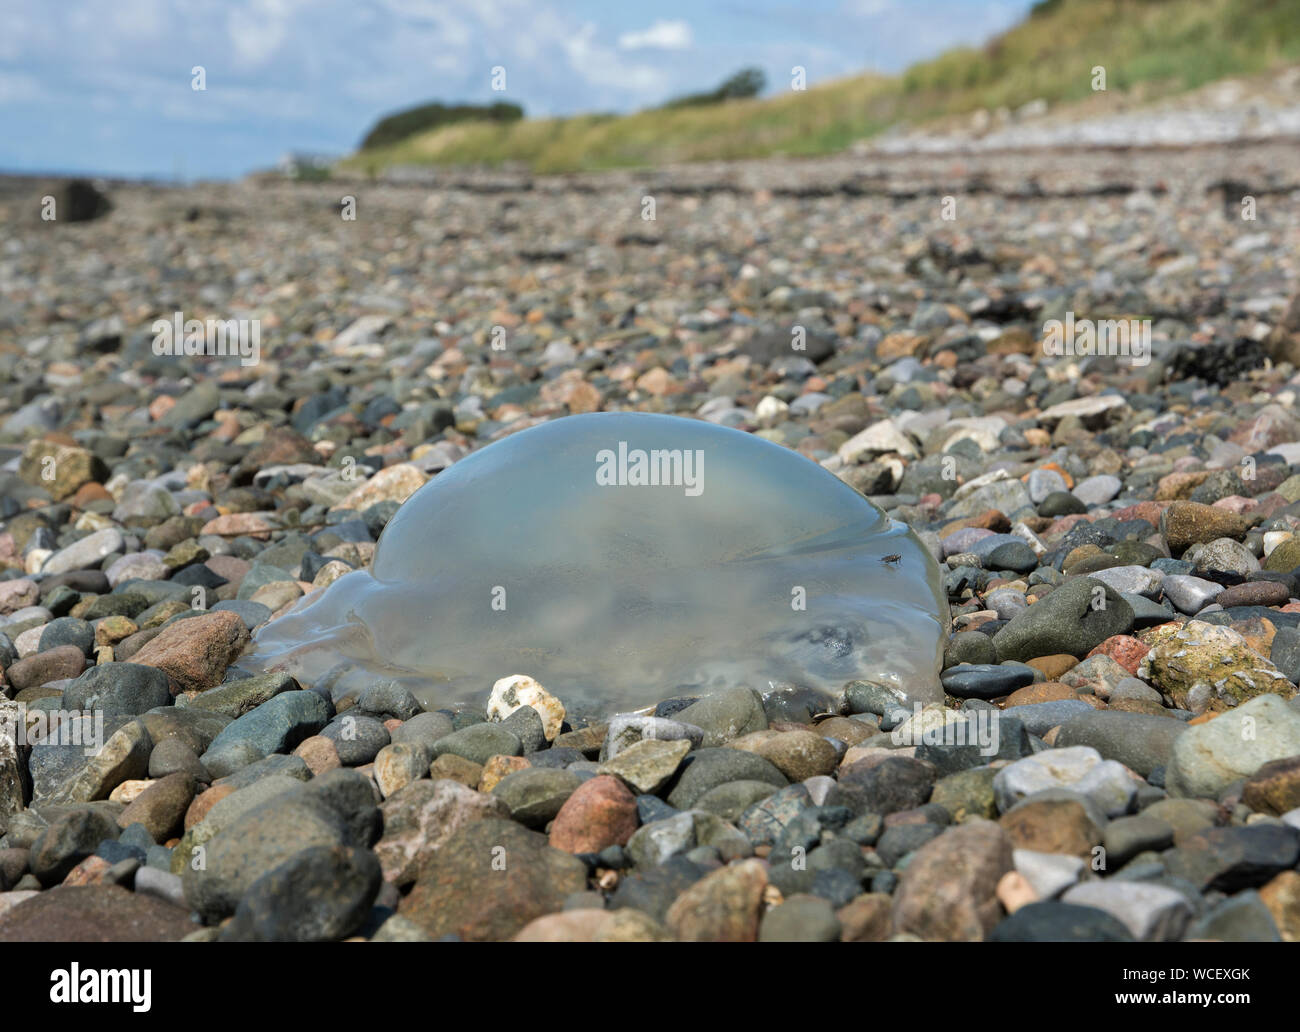 Jellyfish washed up on a stony beach, Lancashire, UK Stock Photo